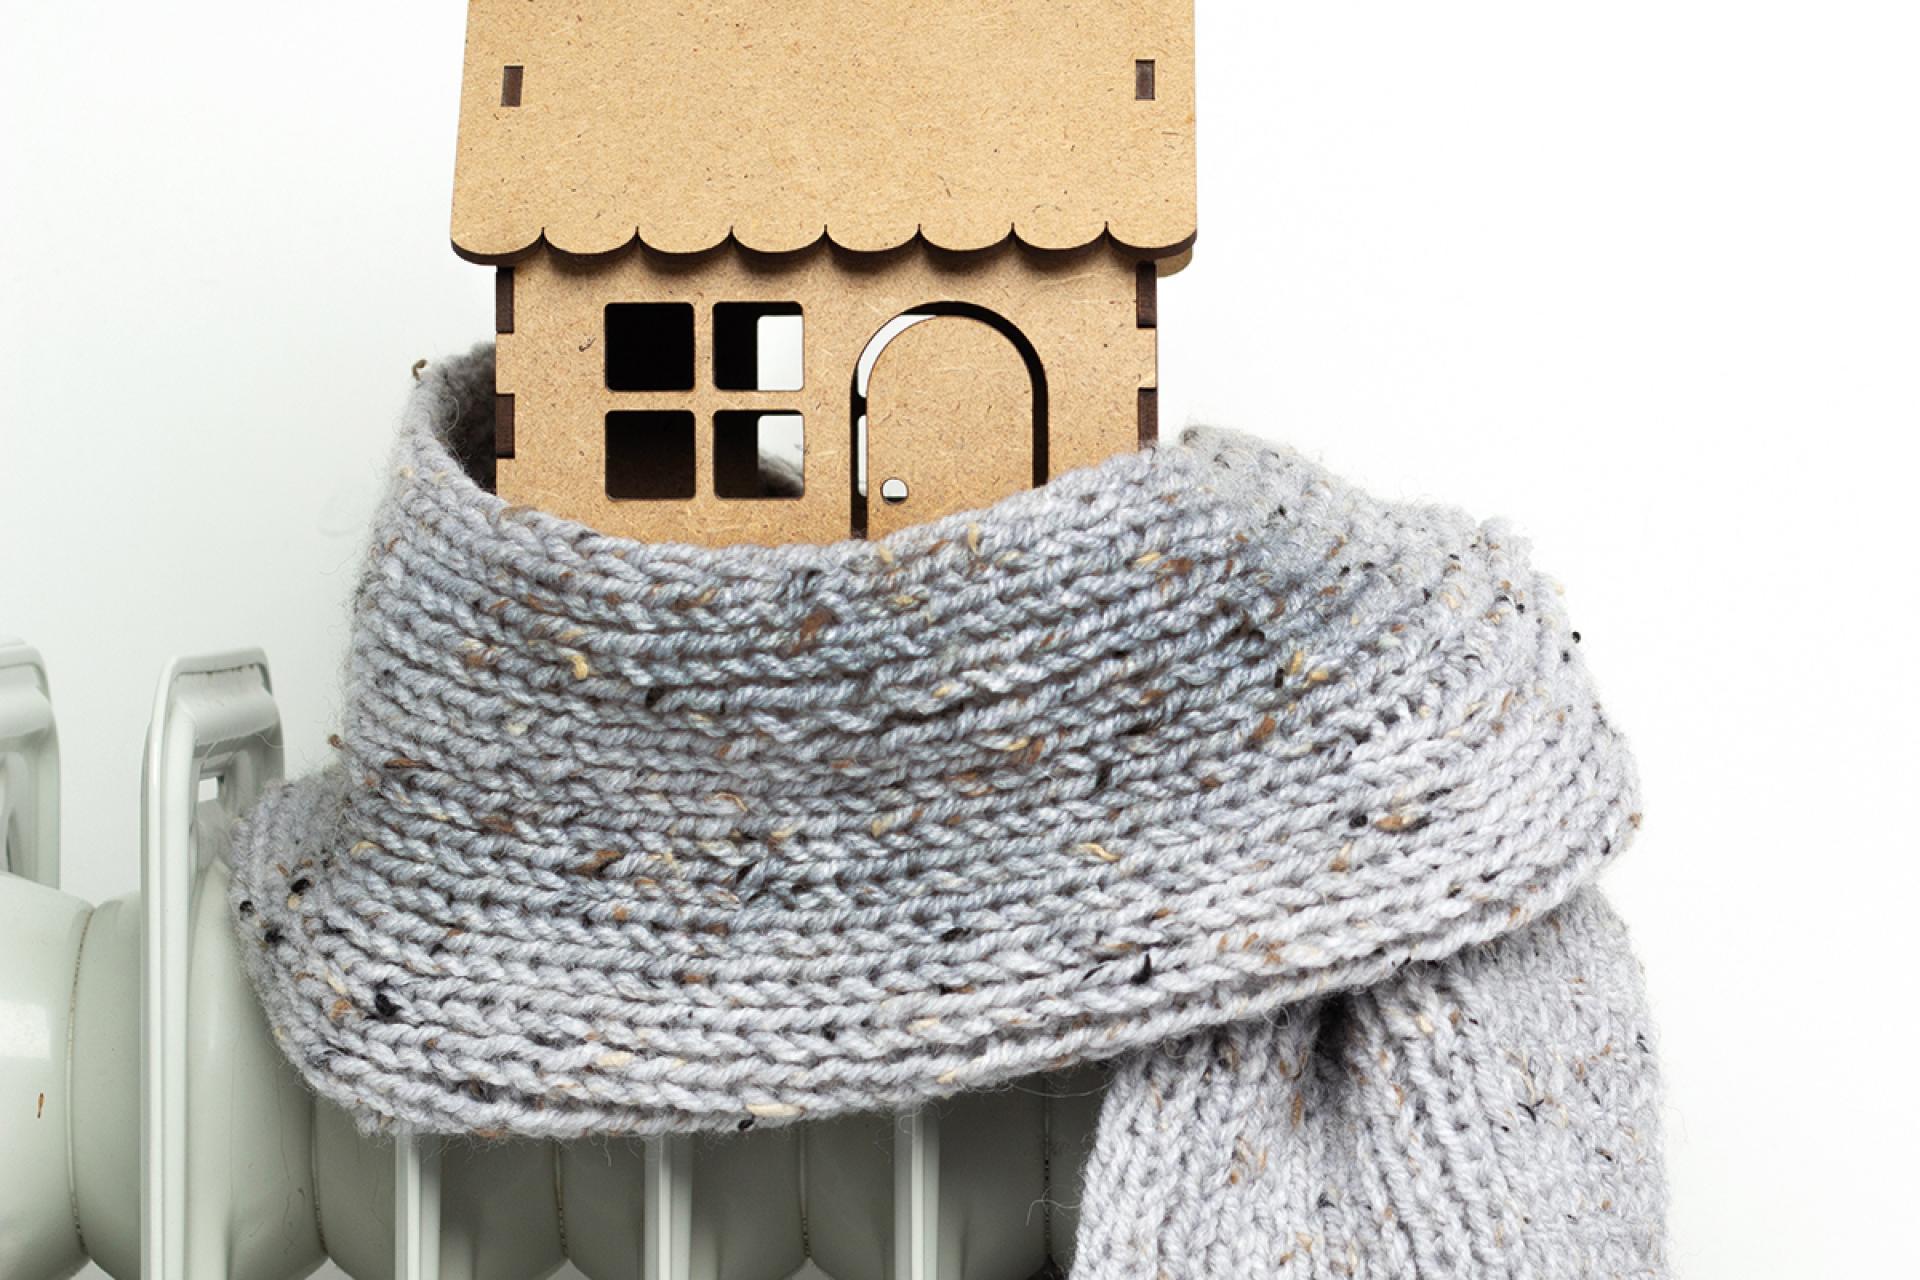 Foto van houten huisje in een sjaal gewikkeld, staand op de verwarming.